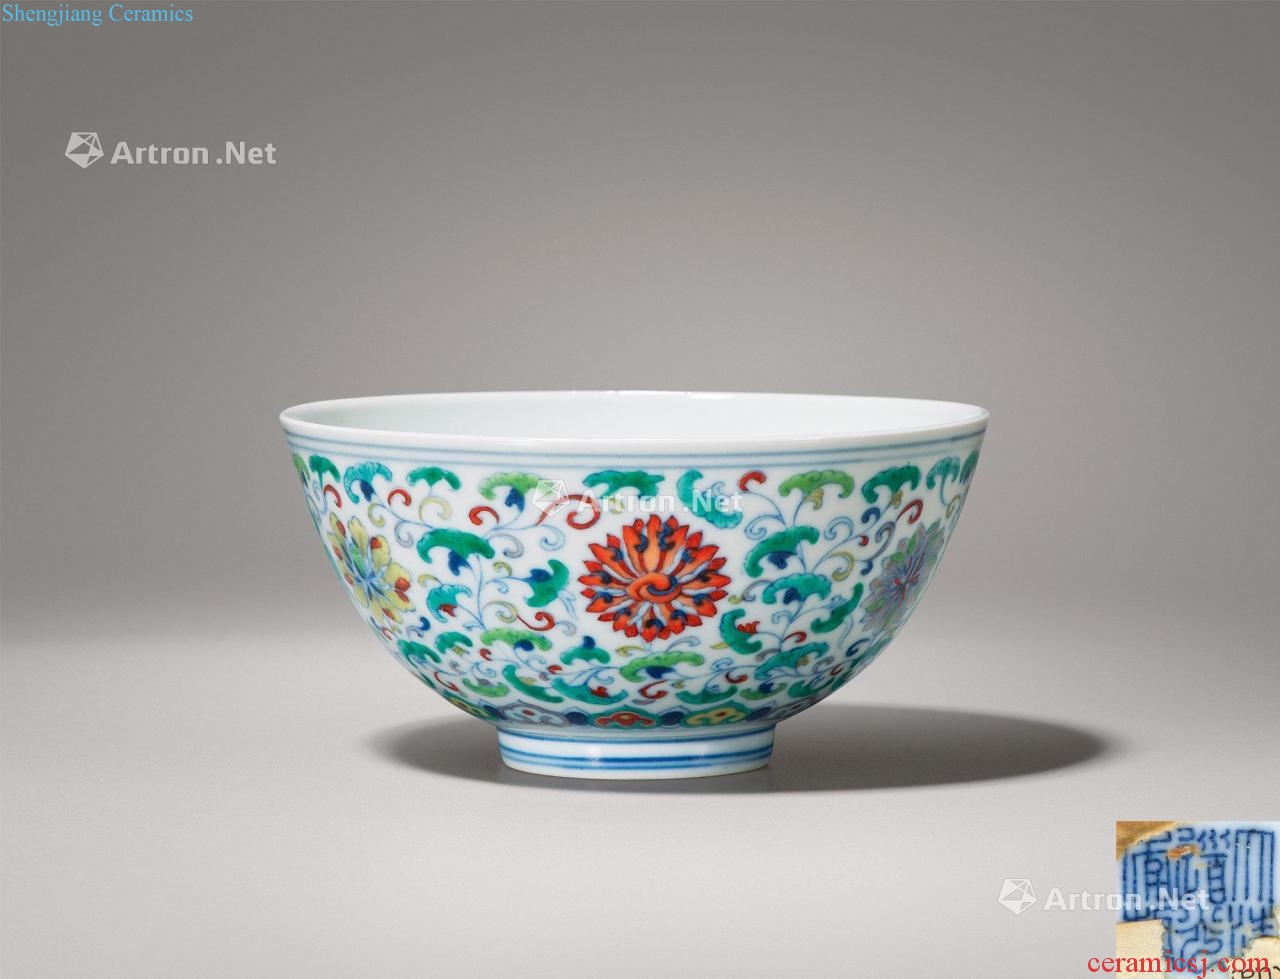 Qing daoguang bucket color flower green-splashed bowls